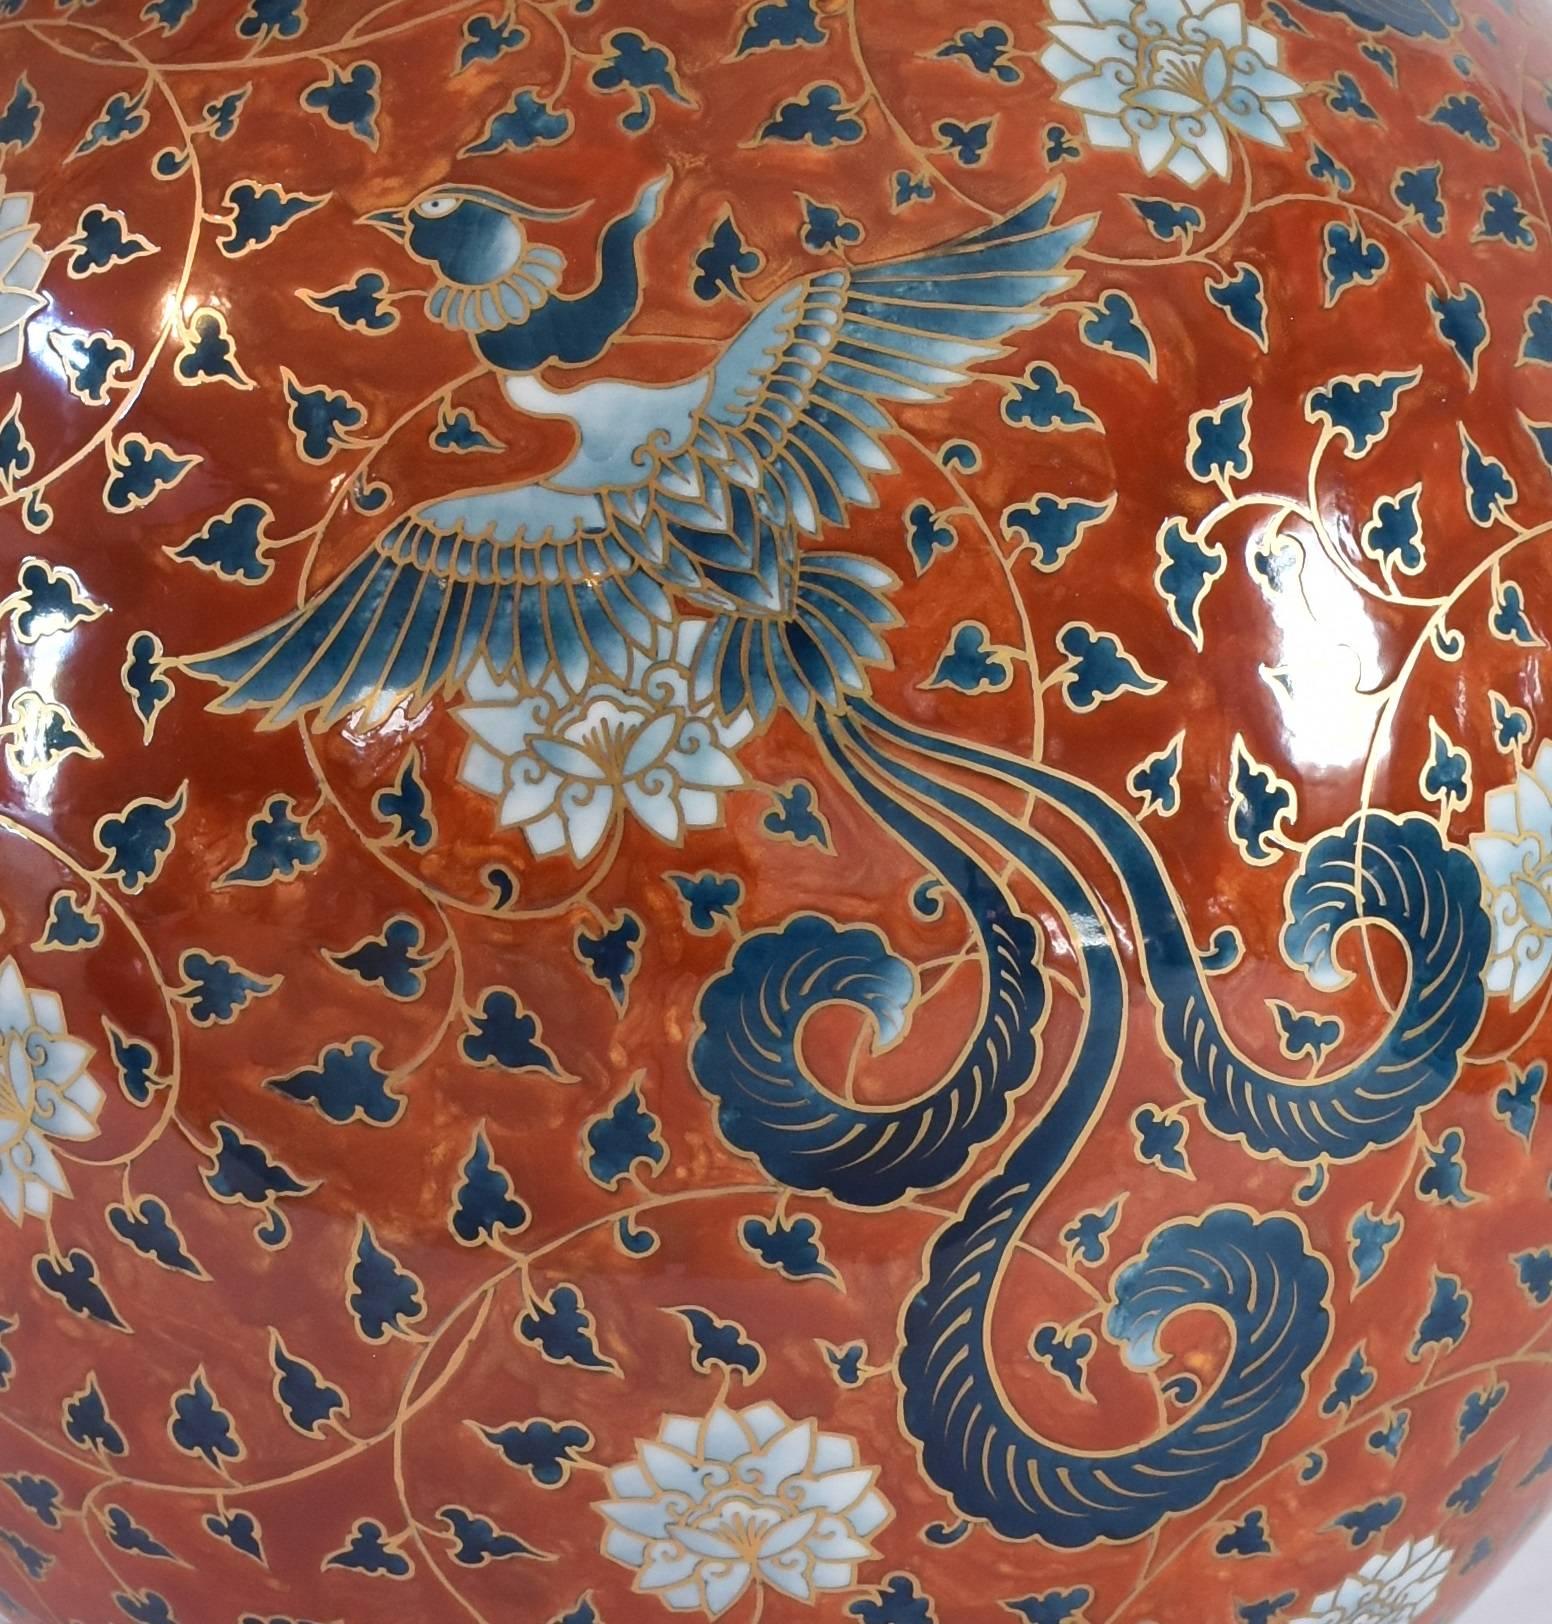 Mesmerizing sehr große zeitgenössische japanische dekorative Porzellan-Vase, extrem aufwendig vergoldet und von Hand bemalt auf einem massiven atemberaubenden Flasche geformt feines Arita Porzellan in einem auffallenden rot, das signierte